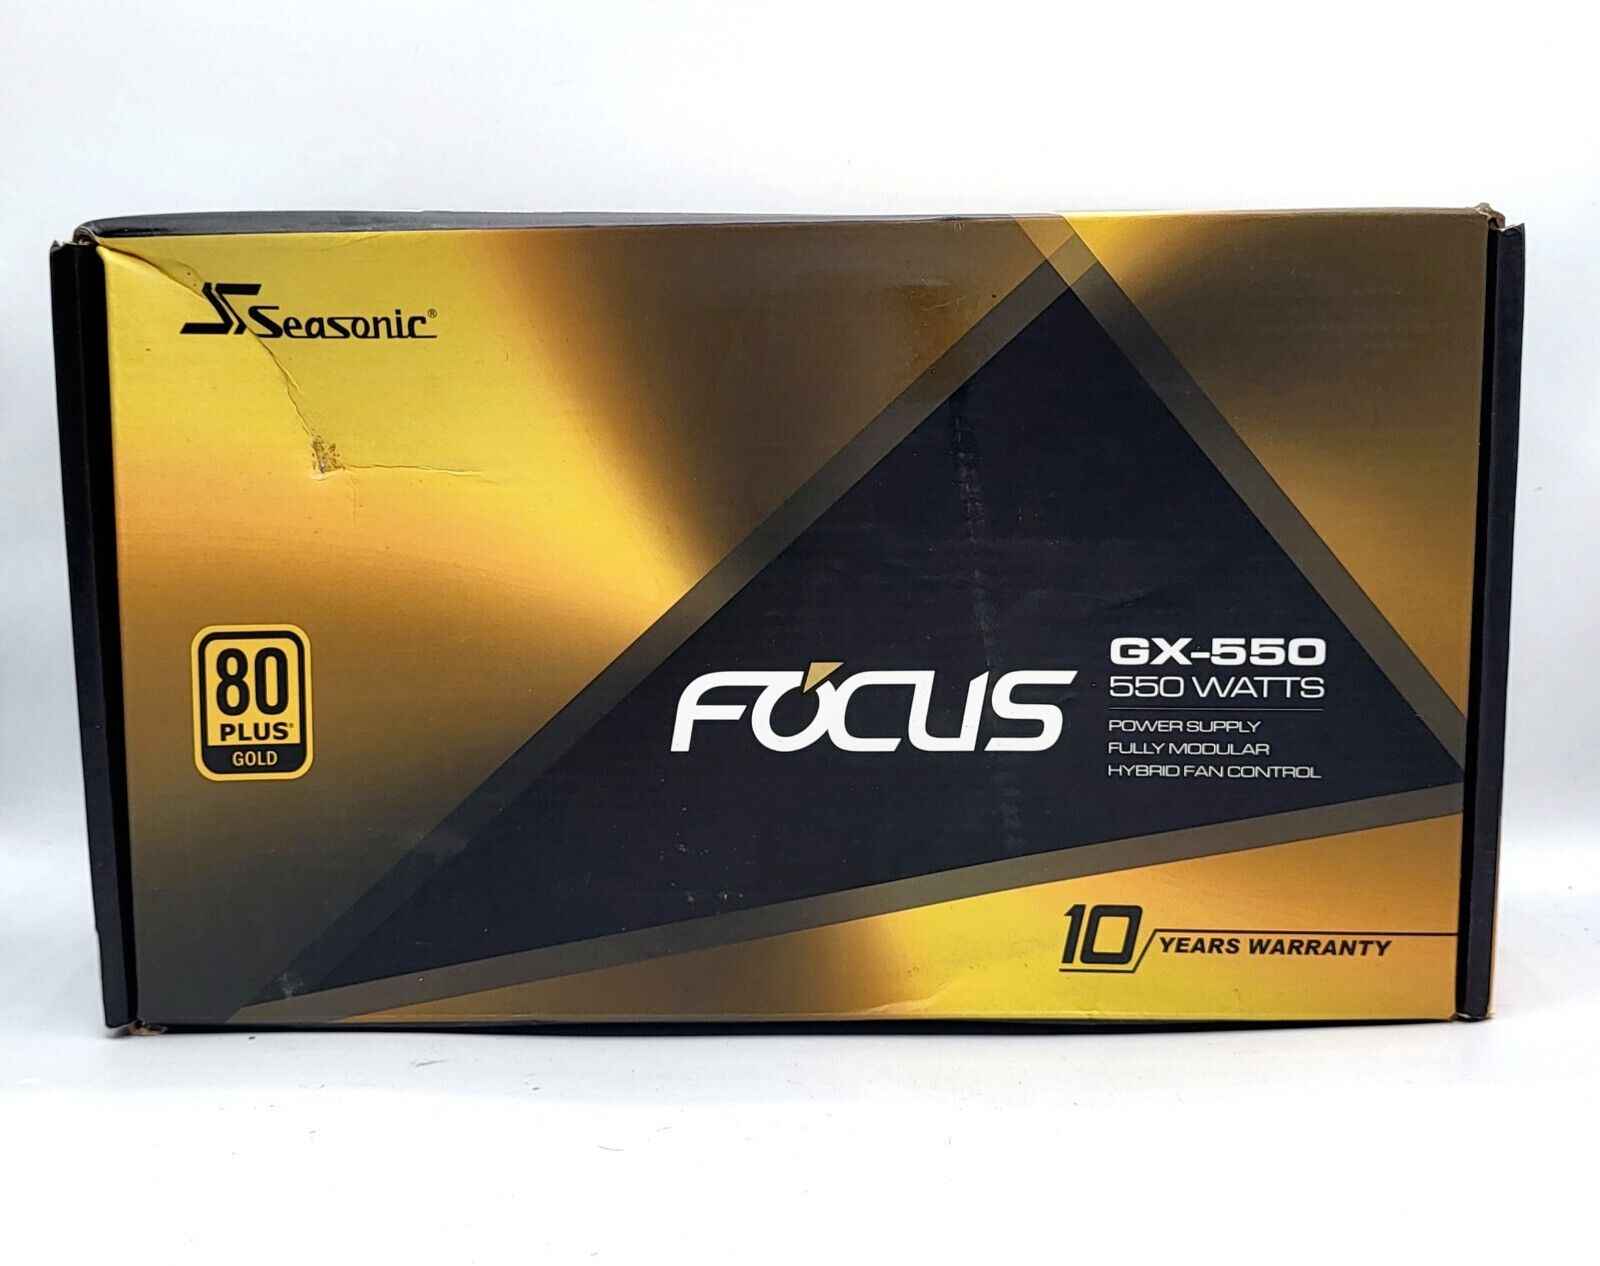 Seasonic FOCUS GX-550 80 Plus Gold Fully Modular Power Supply Hybrid Fan Control